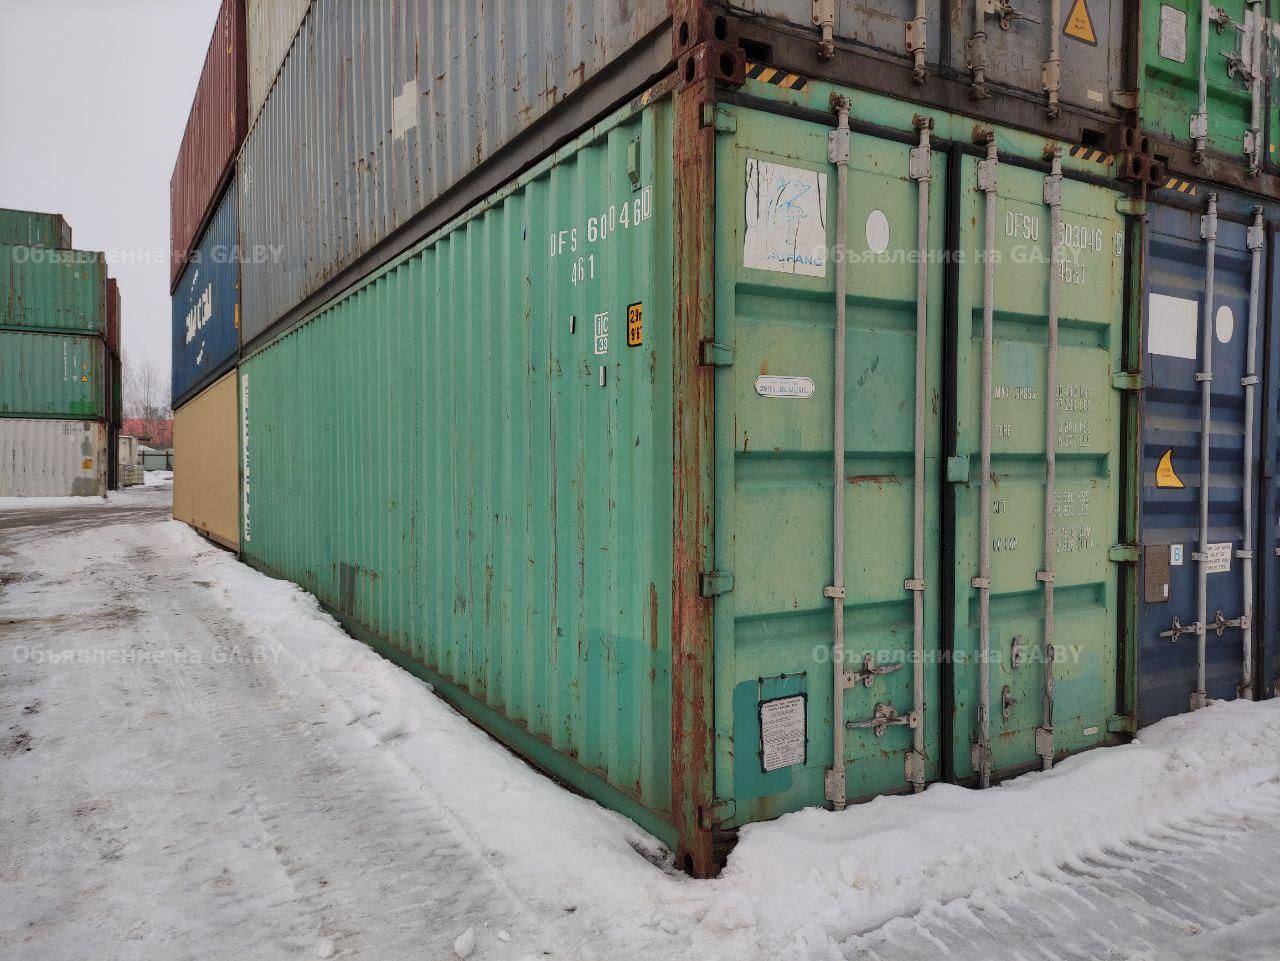 Выполню Склад Хозблок Бытовка Морской контейнер - GA.BY